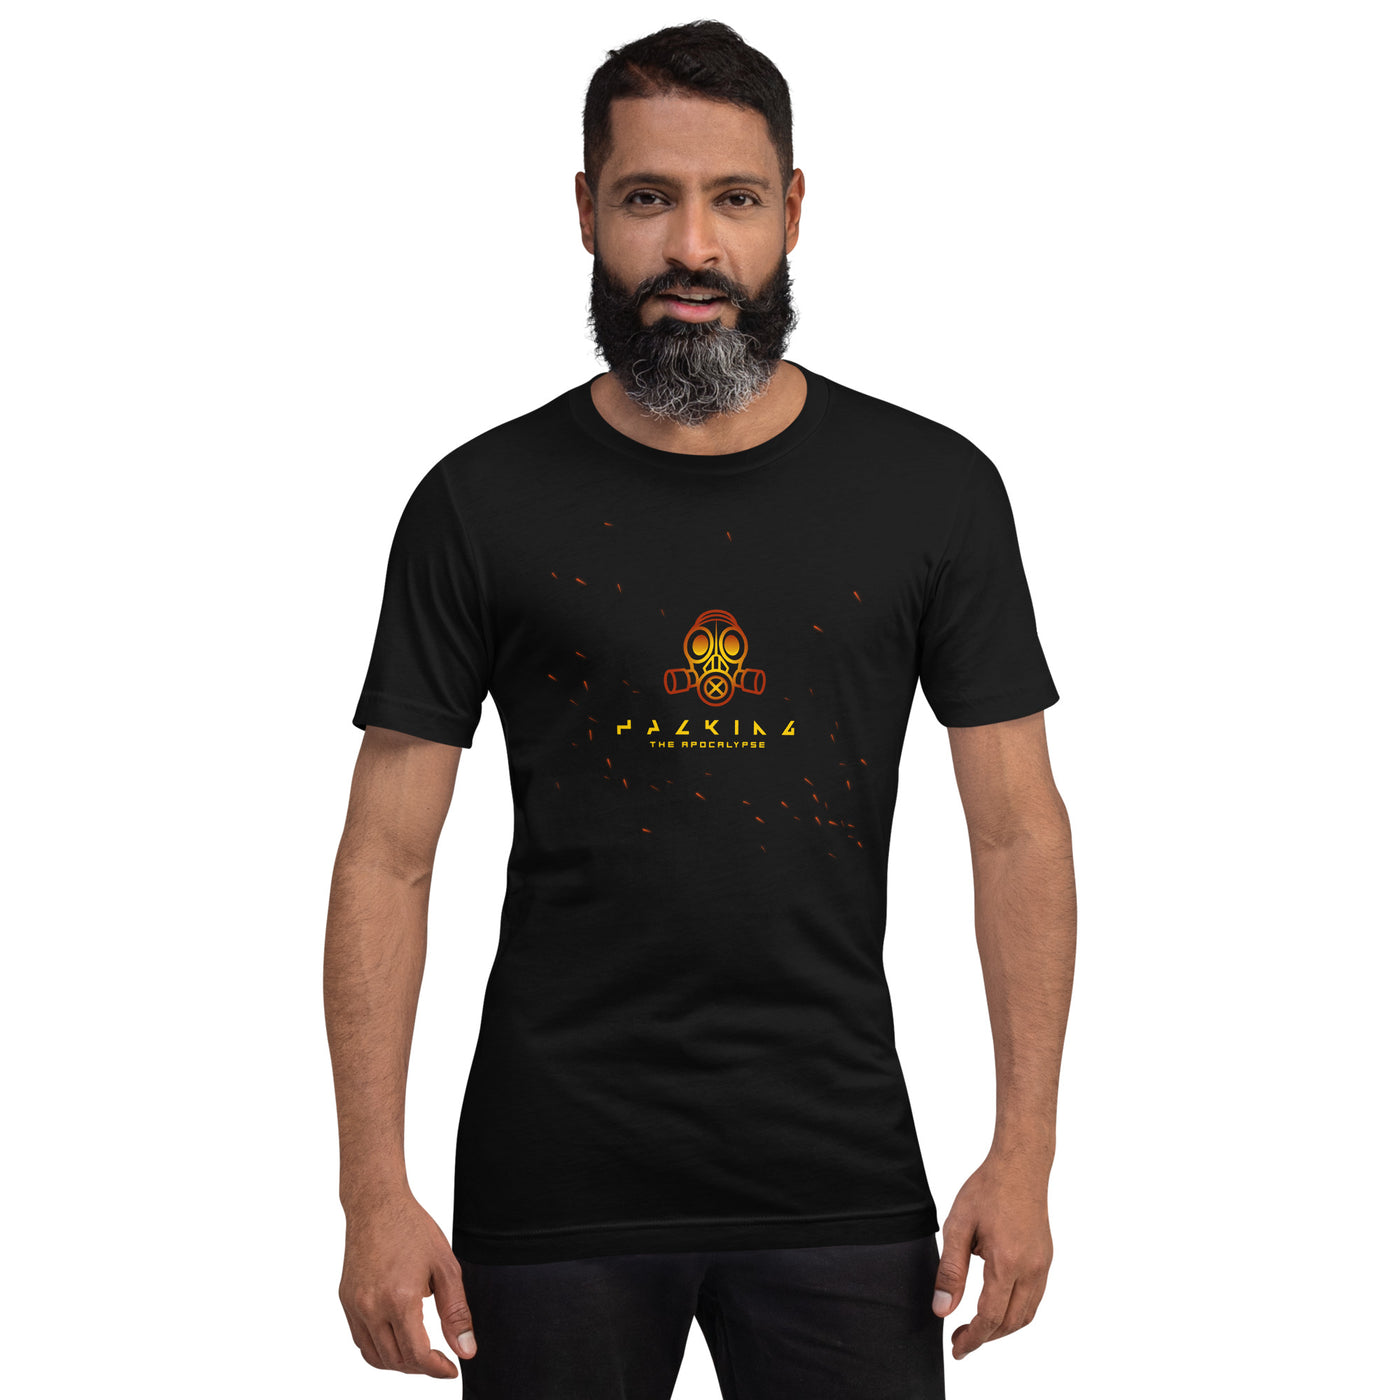 Hacking the apocalypse - Unisex t-shirt